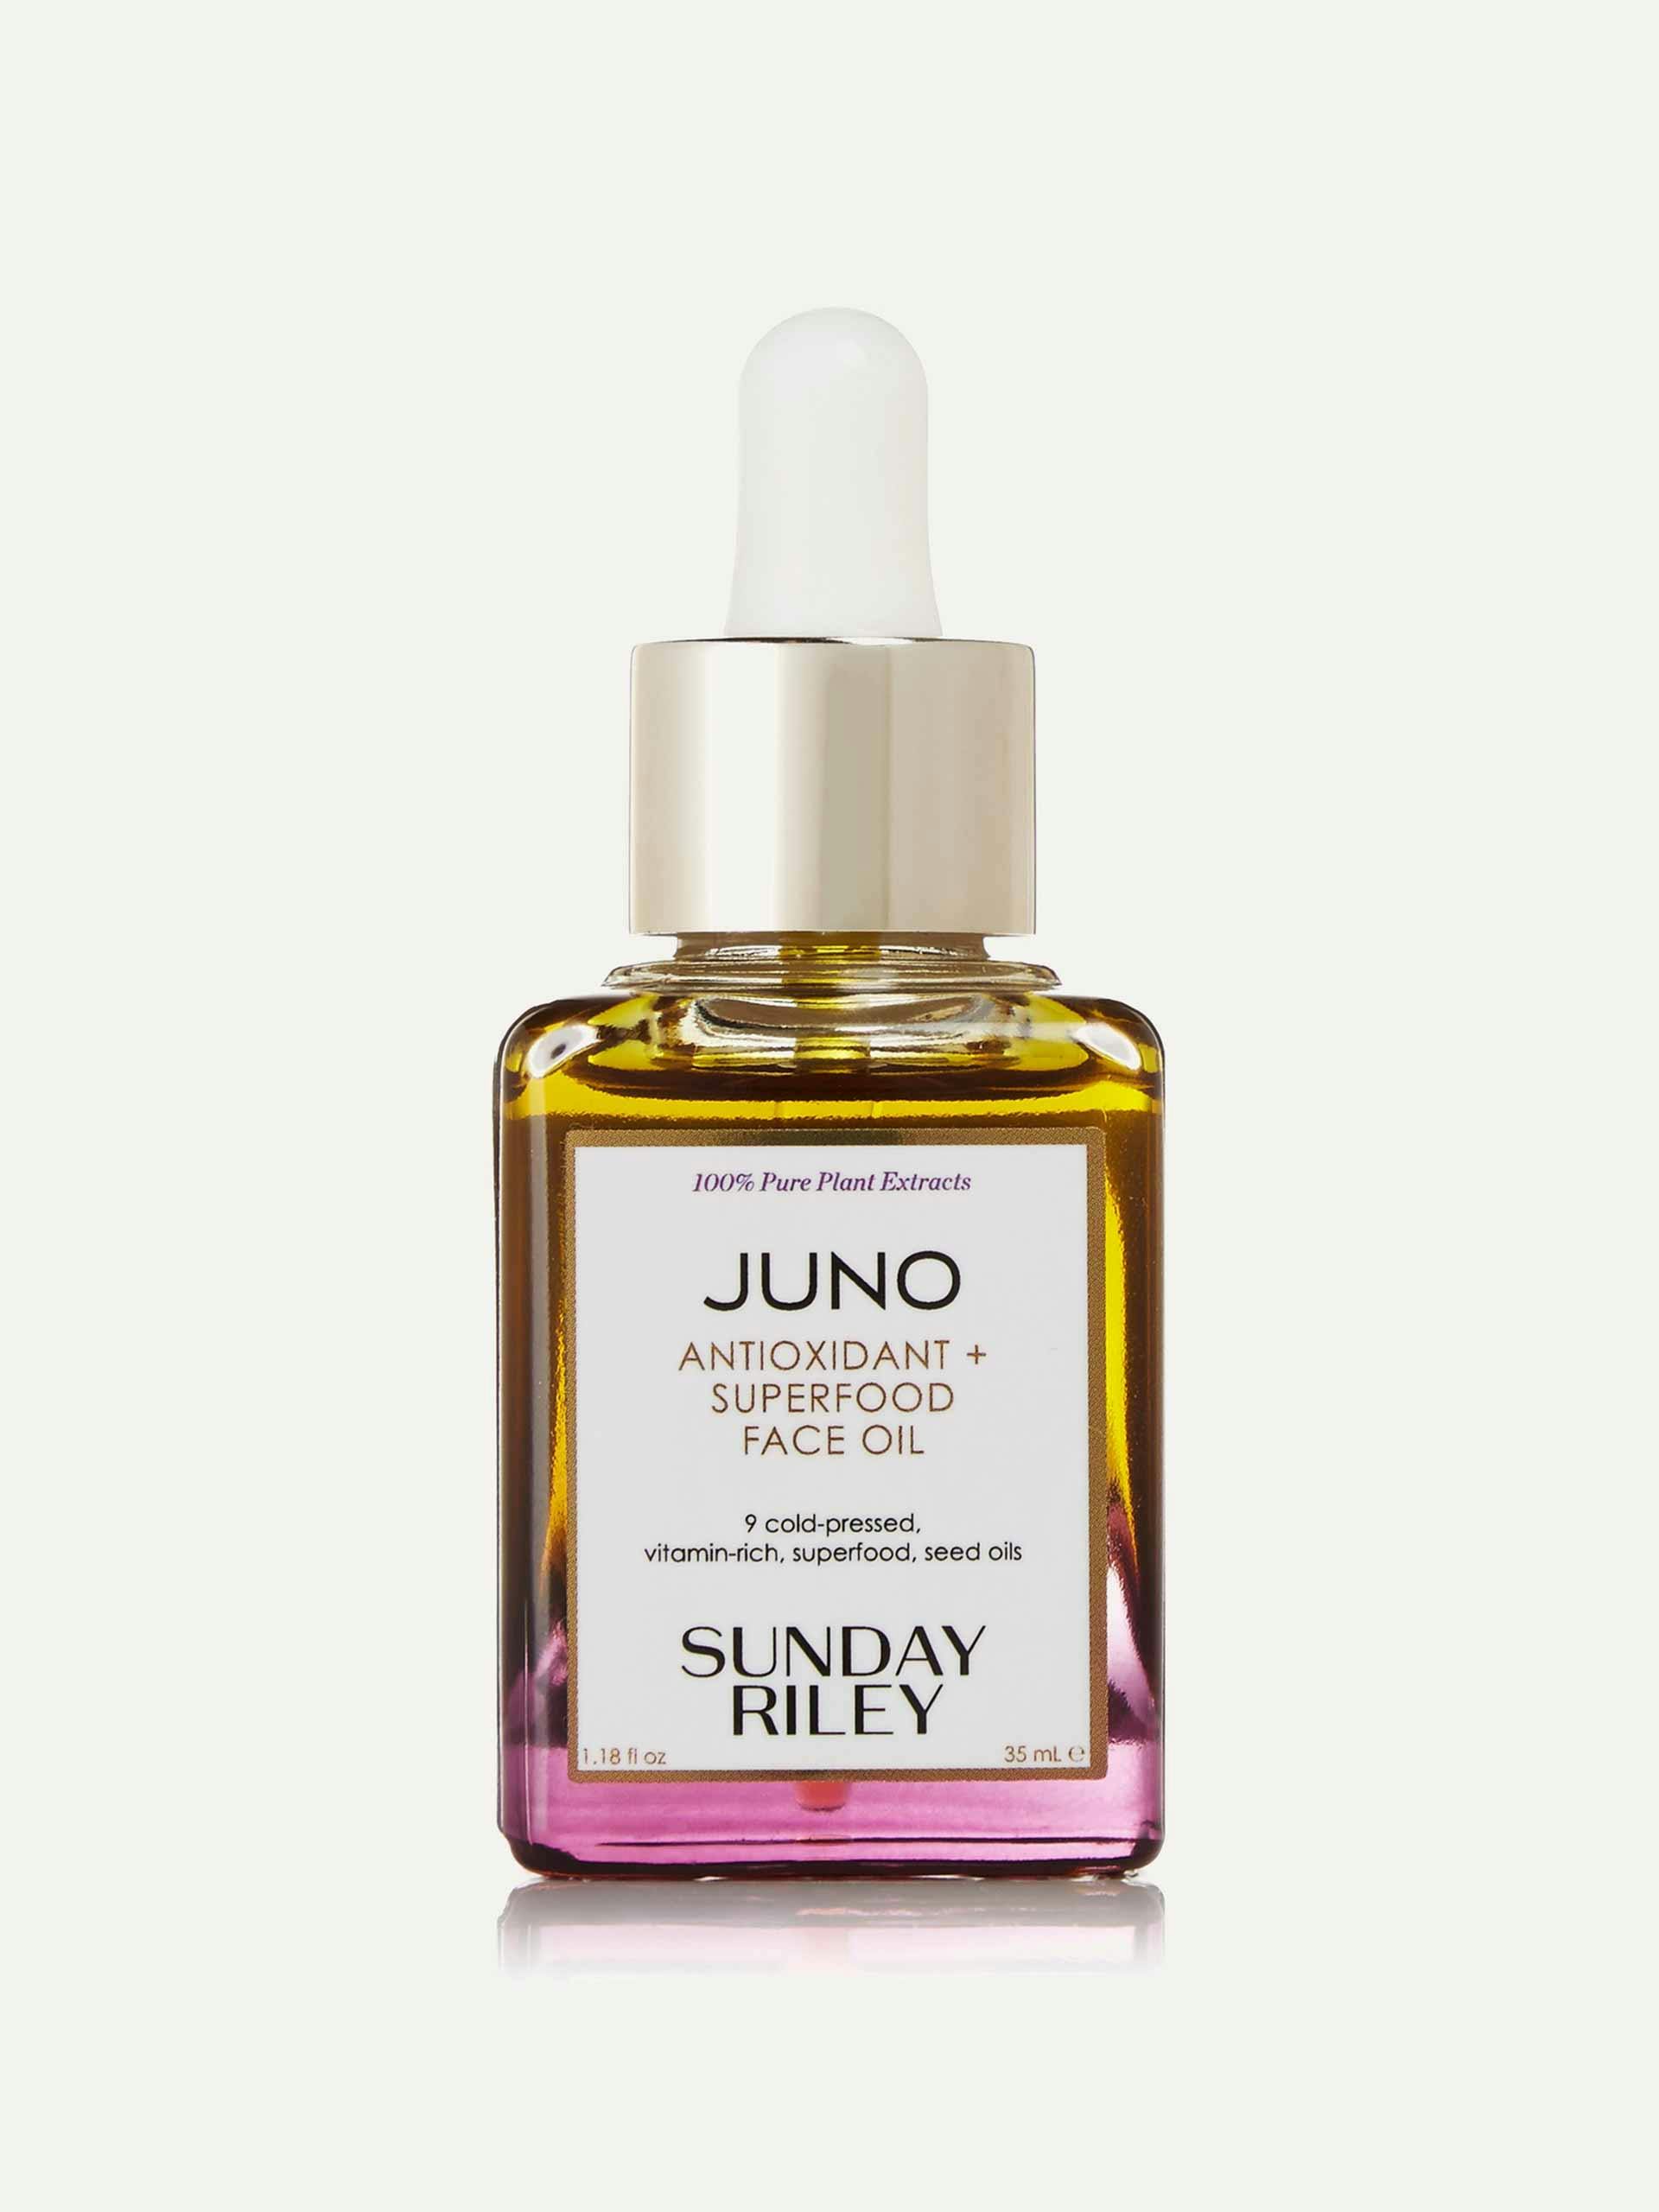 Juno face oil